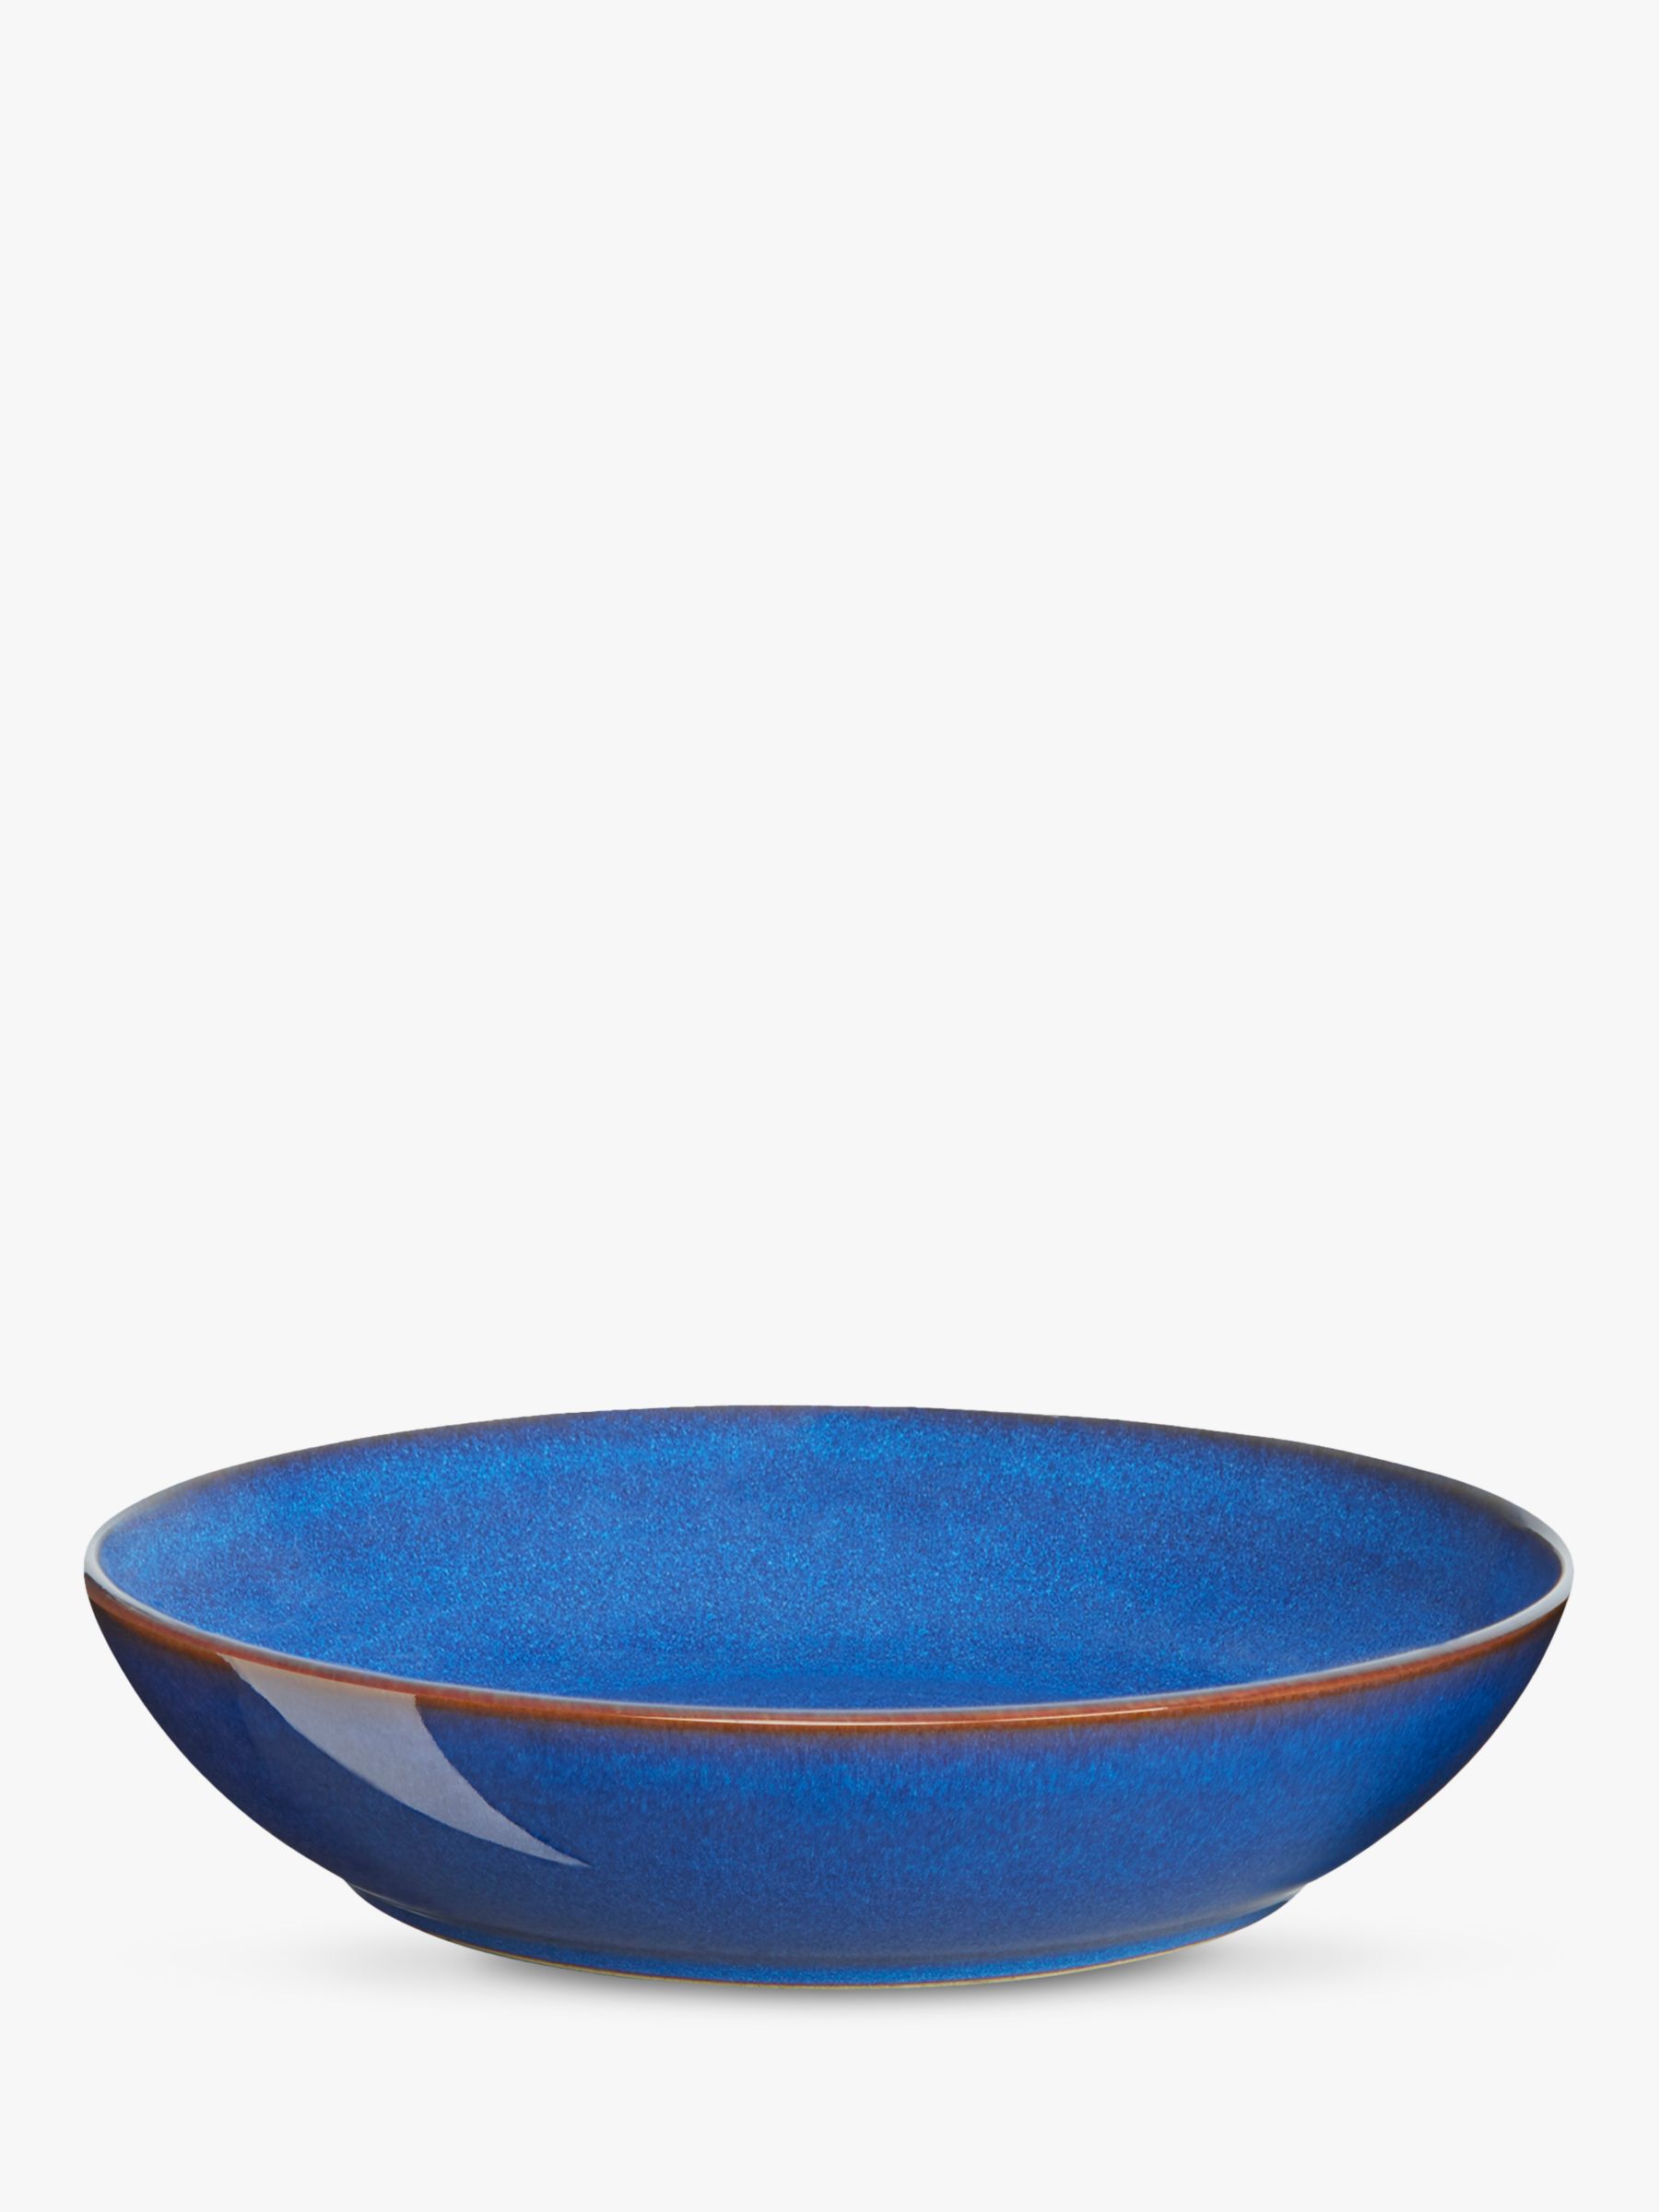 Bring Home Imperial Blue Alt Denby Pasta Bowls